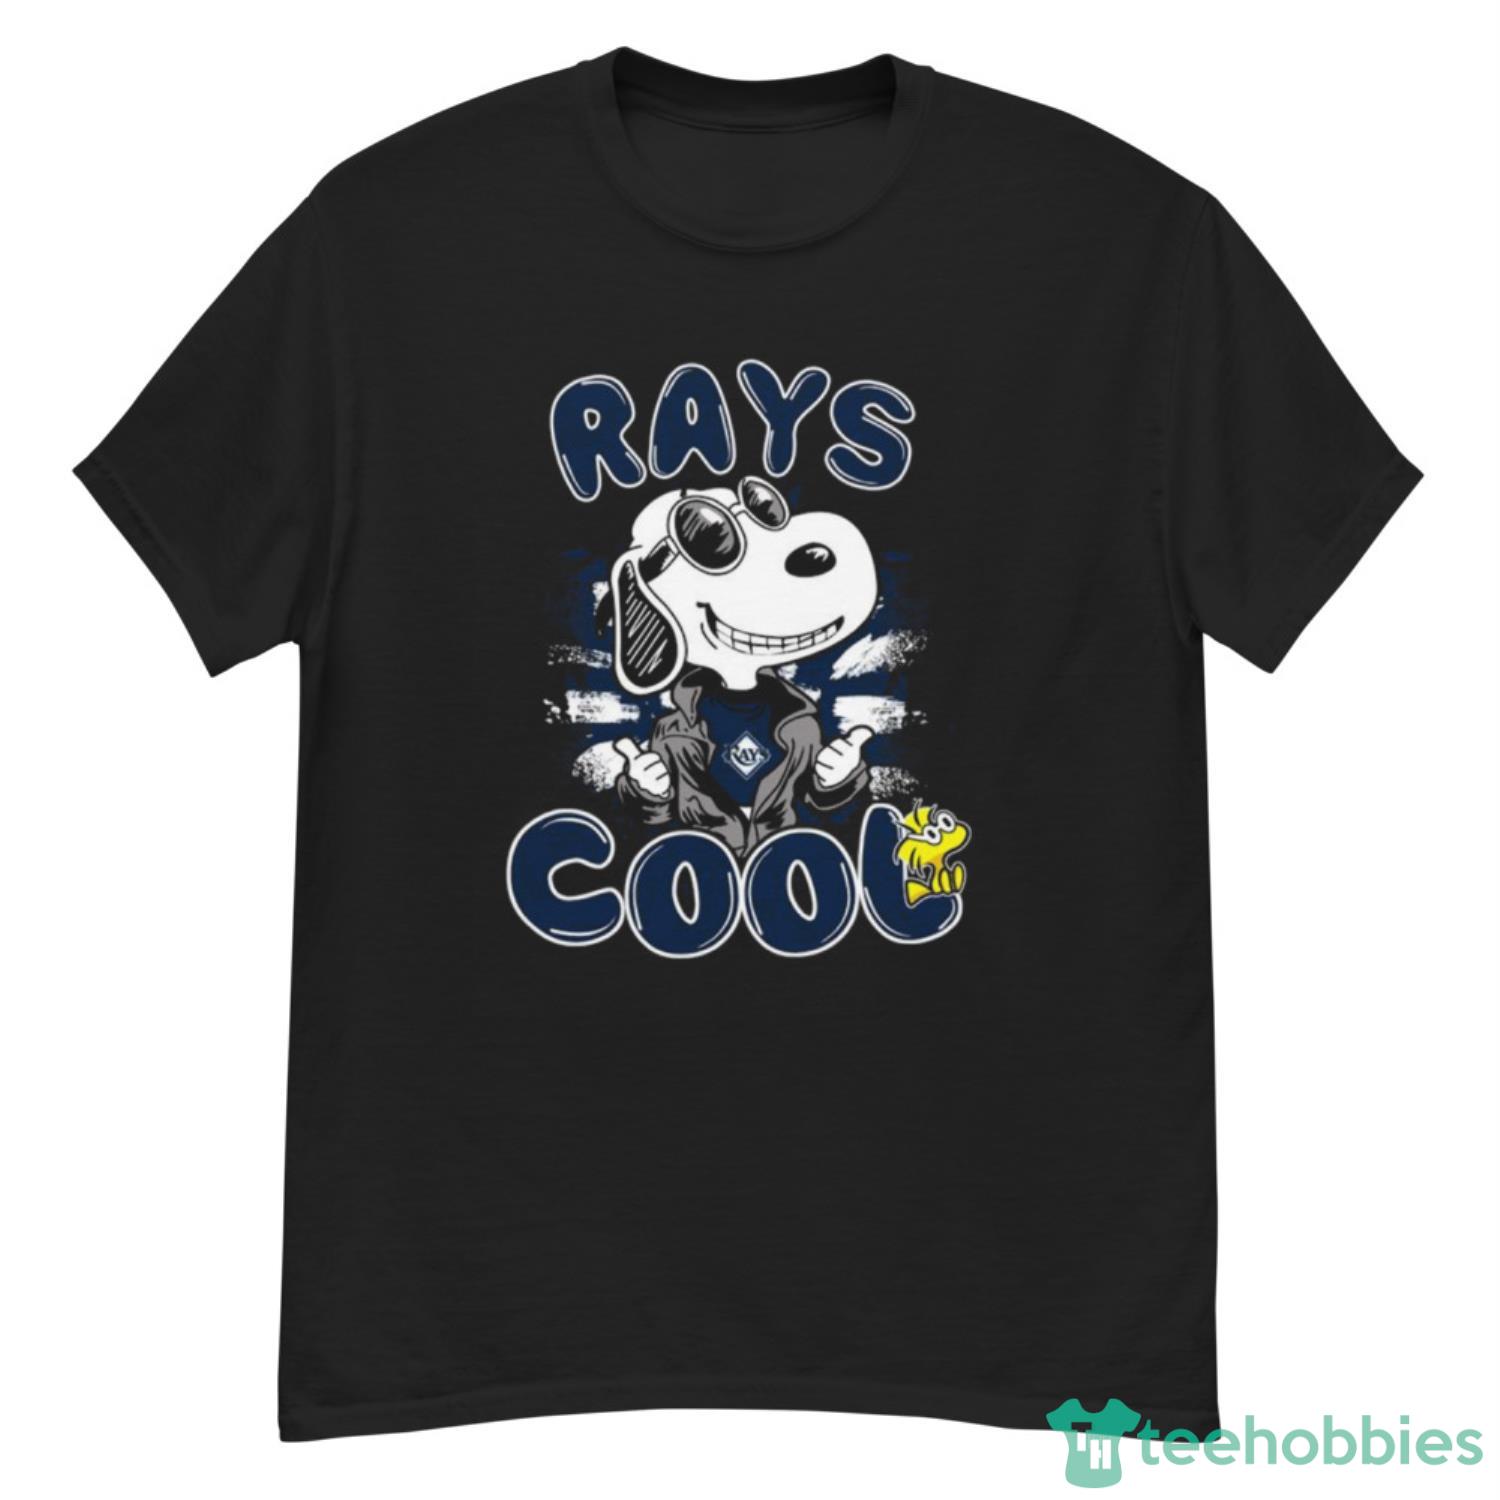 MLB Baseball Tampa Bay Rays Cool Snoopy Shirt T Shirt - G500 Men’s Classic T-Shirt